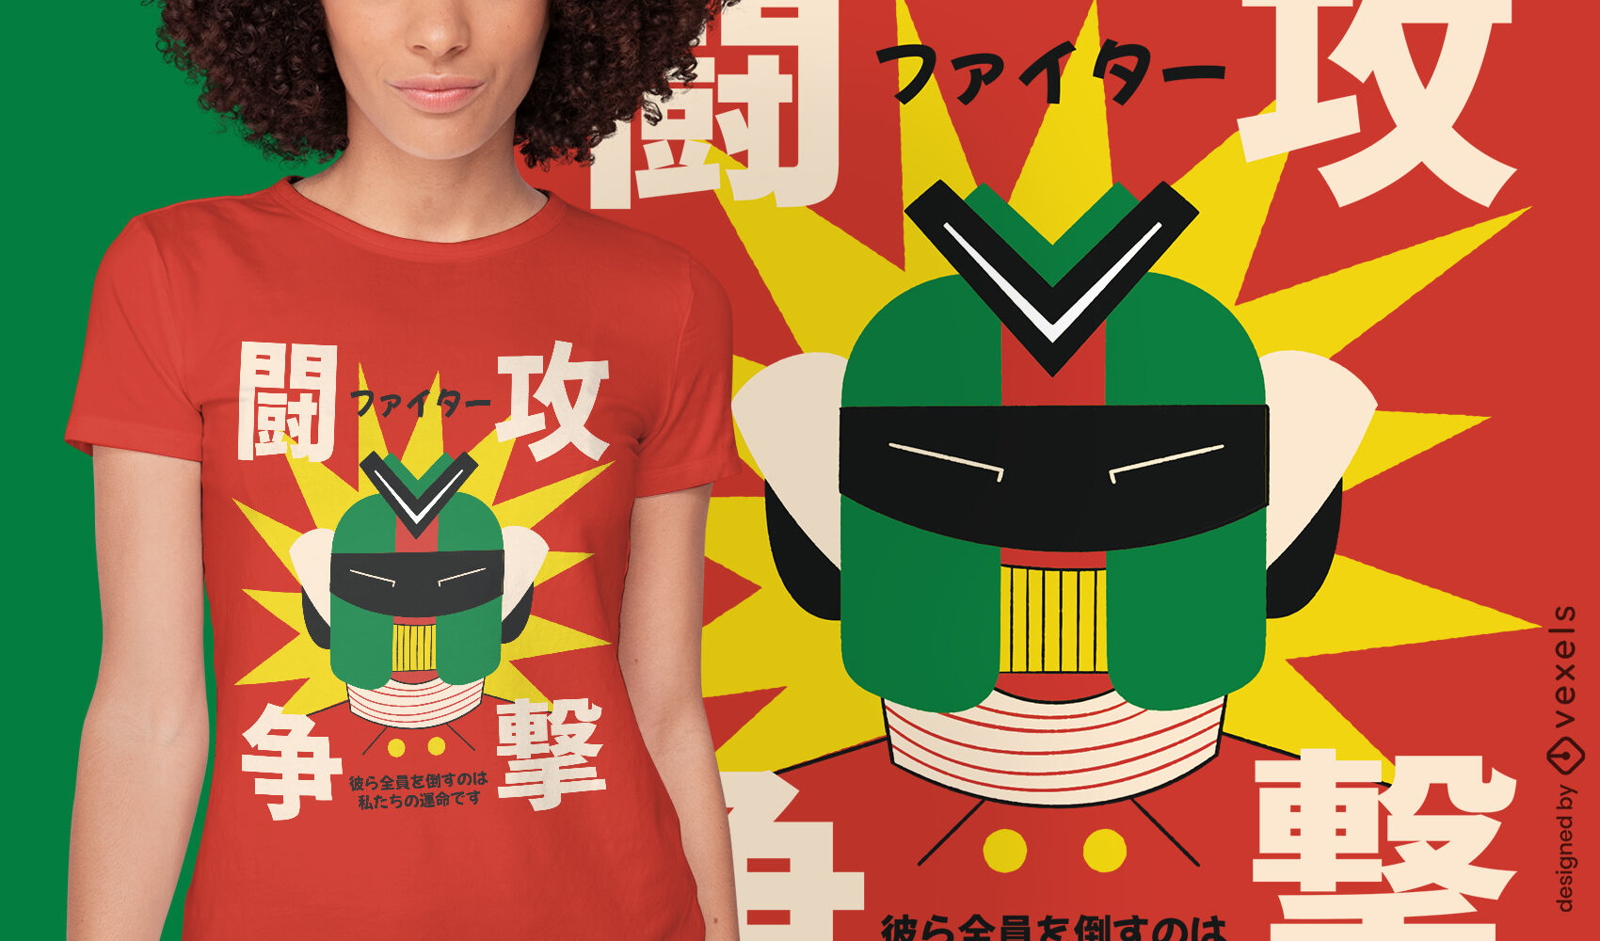 Dise?o de camiseta de cabeza de robot japon?s.